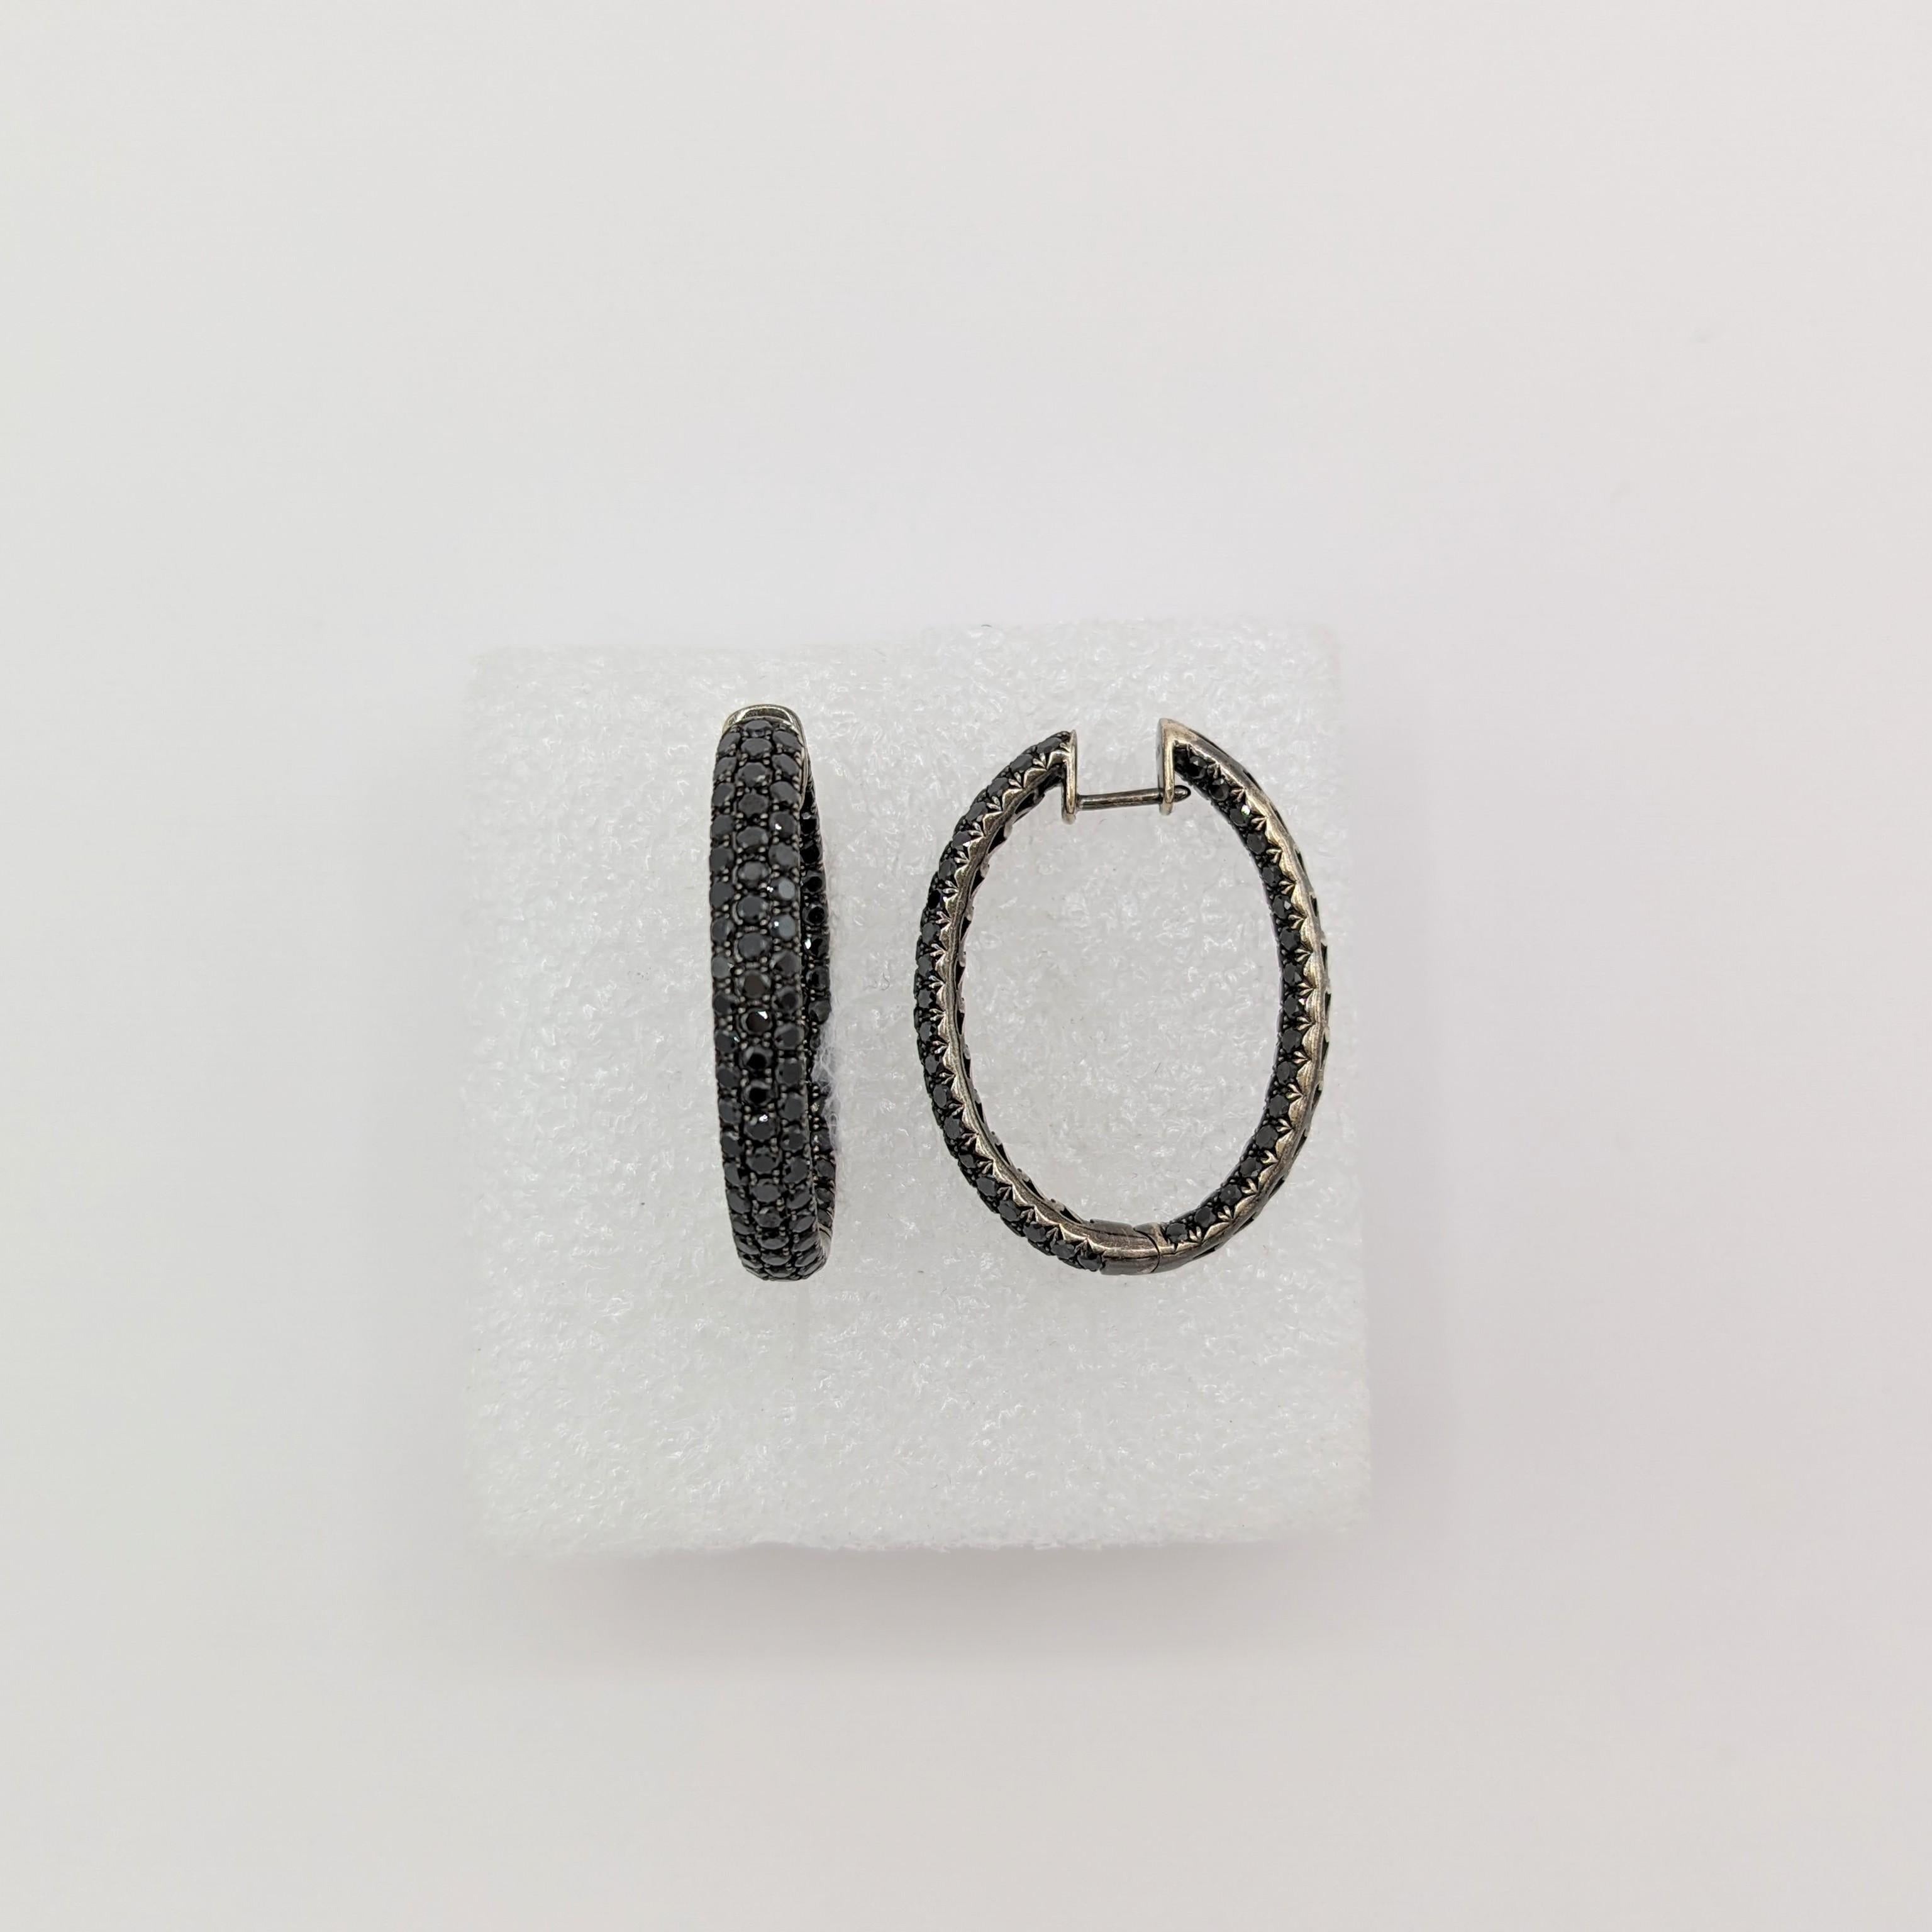 Round Cut Black Diamond Hoop Earrings in 18K White Gold & Black Rhodium